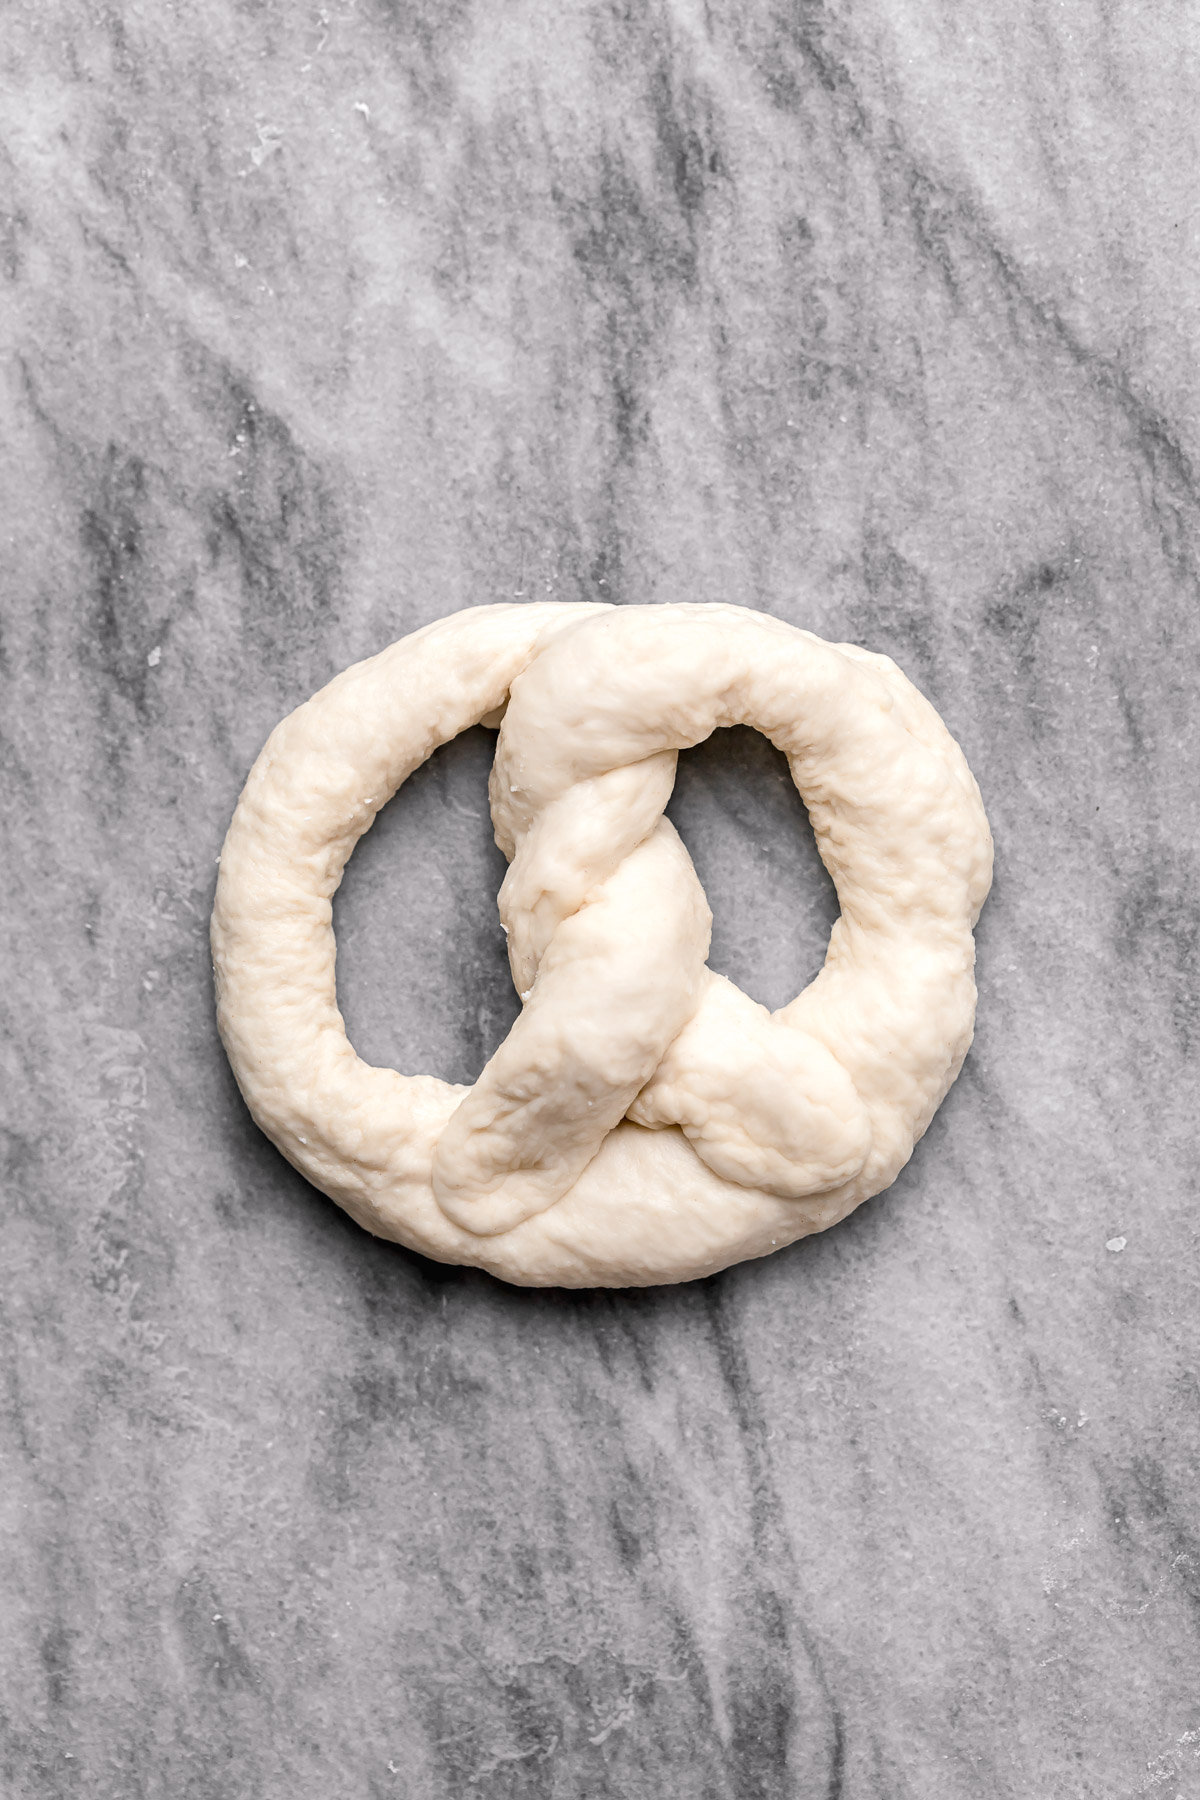 shaped, uncooked soft pretzel dough.